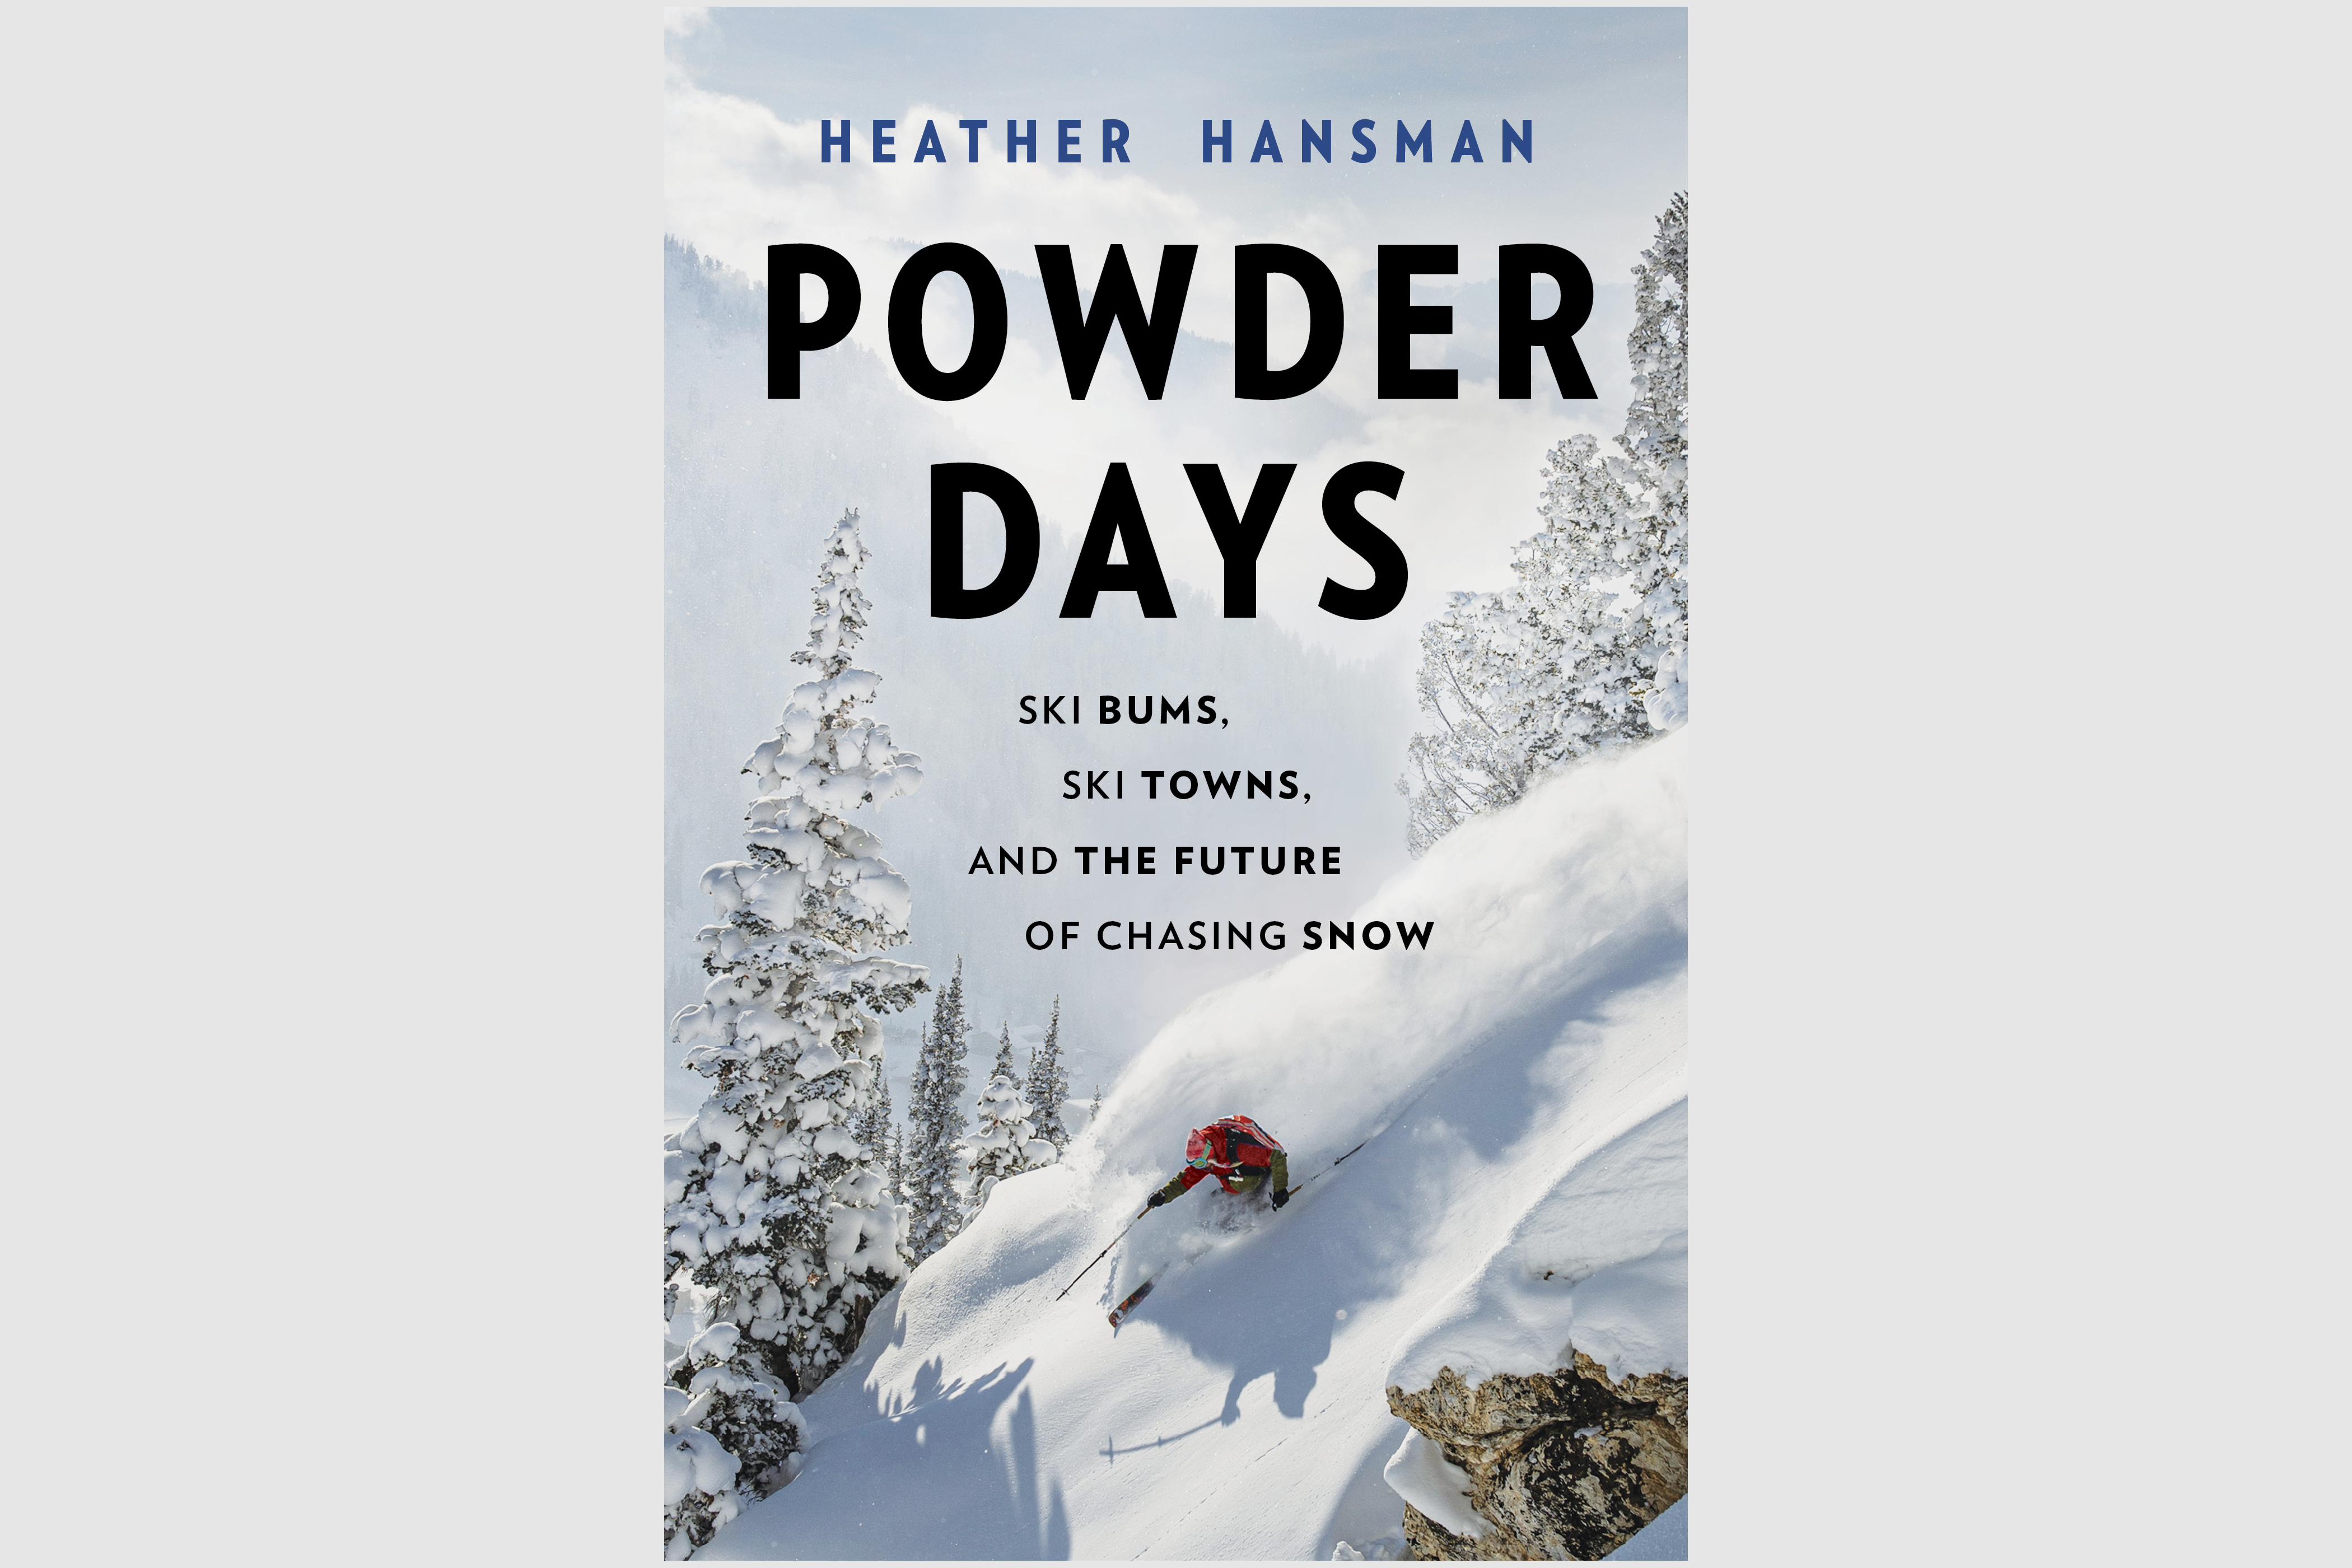 Powder Days by Heather Handsman